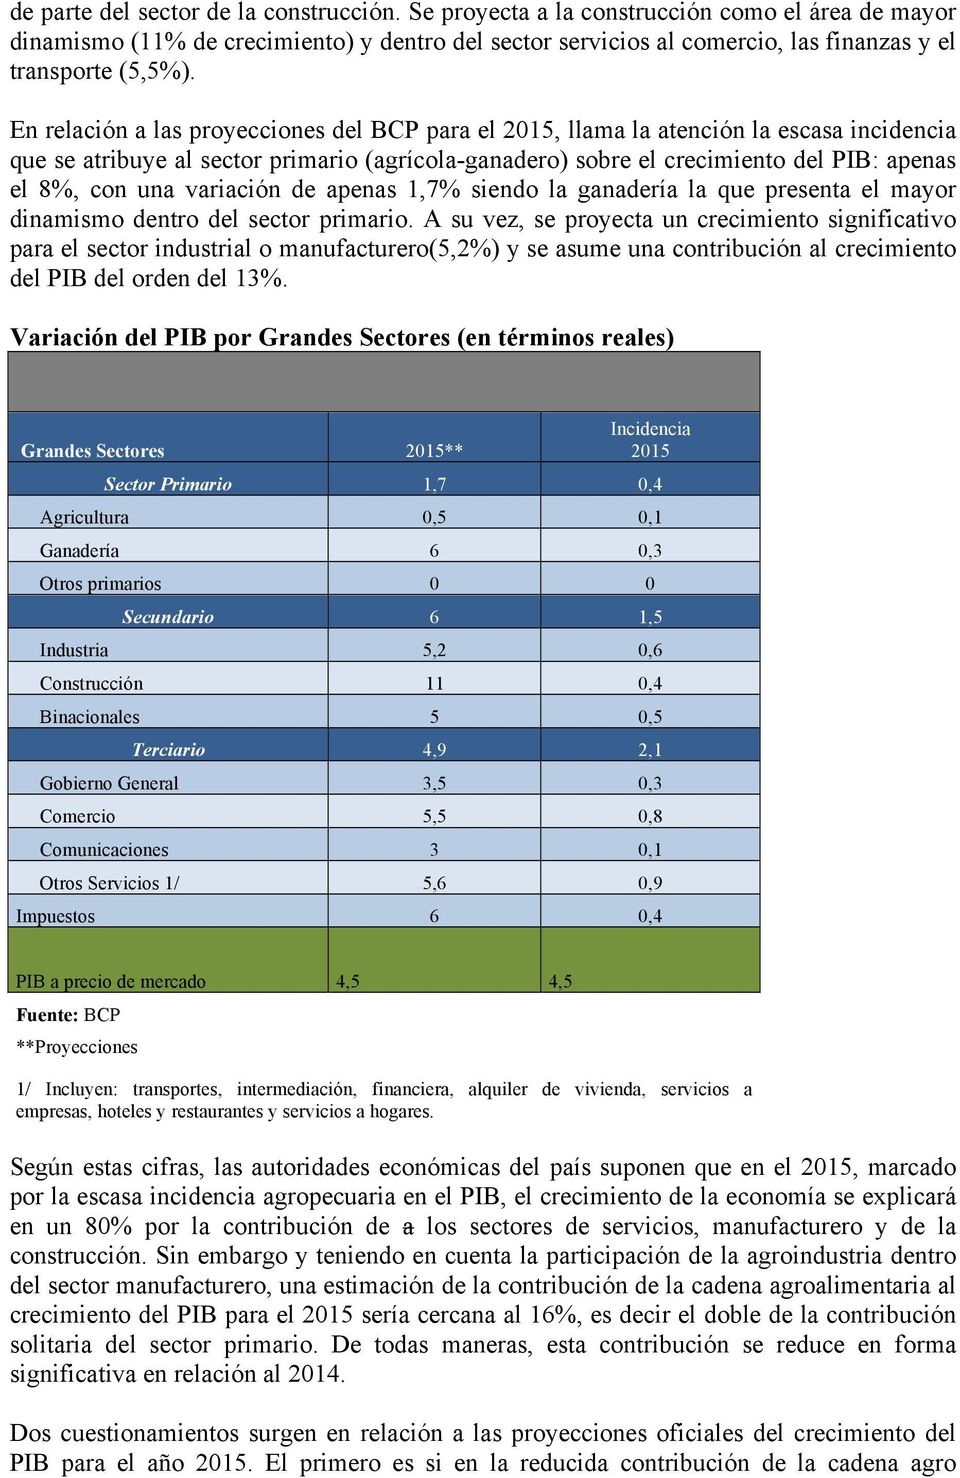 En relación a las proyecciones del BCP para el 2015, llama la atención la escasa incidencia que se atribuye al sector primario (agrícola-ganadero) sobre el crecimiento del PIB: apenas el 8%, con una